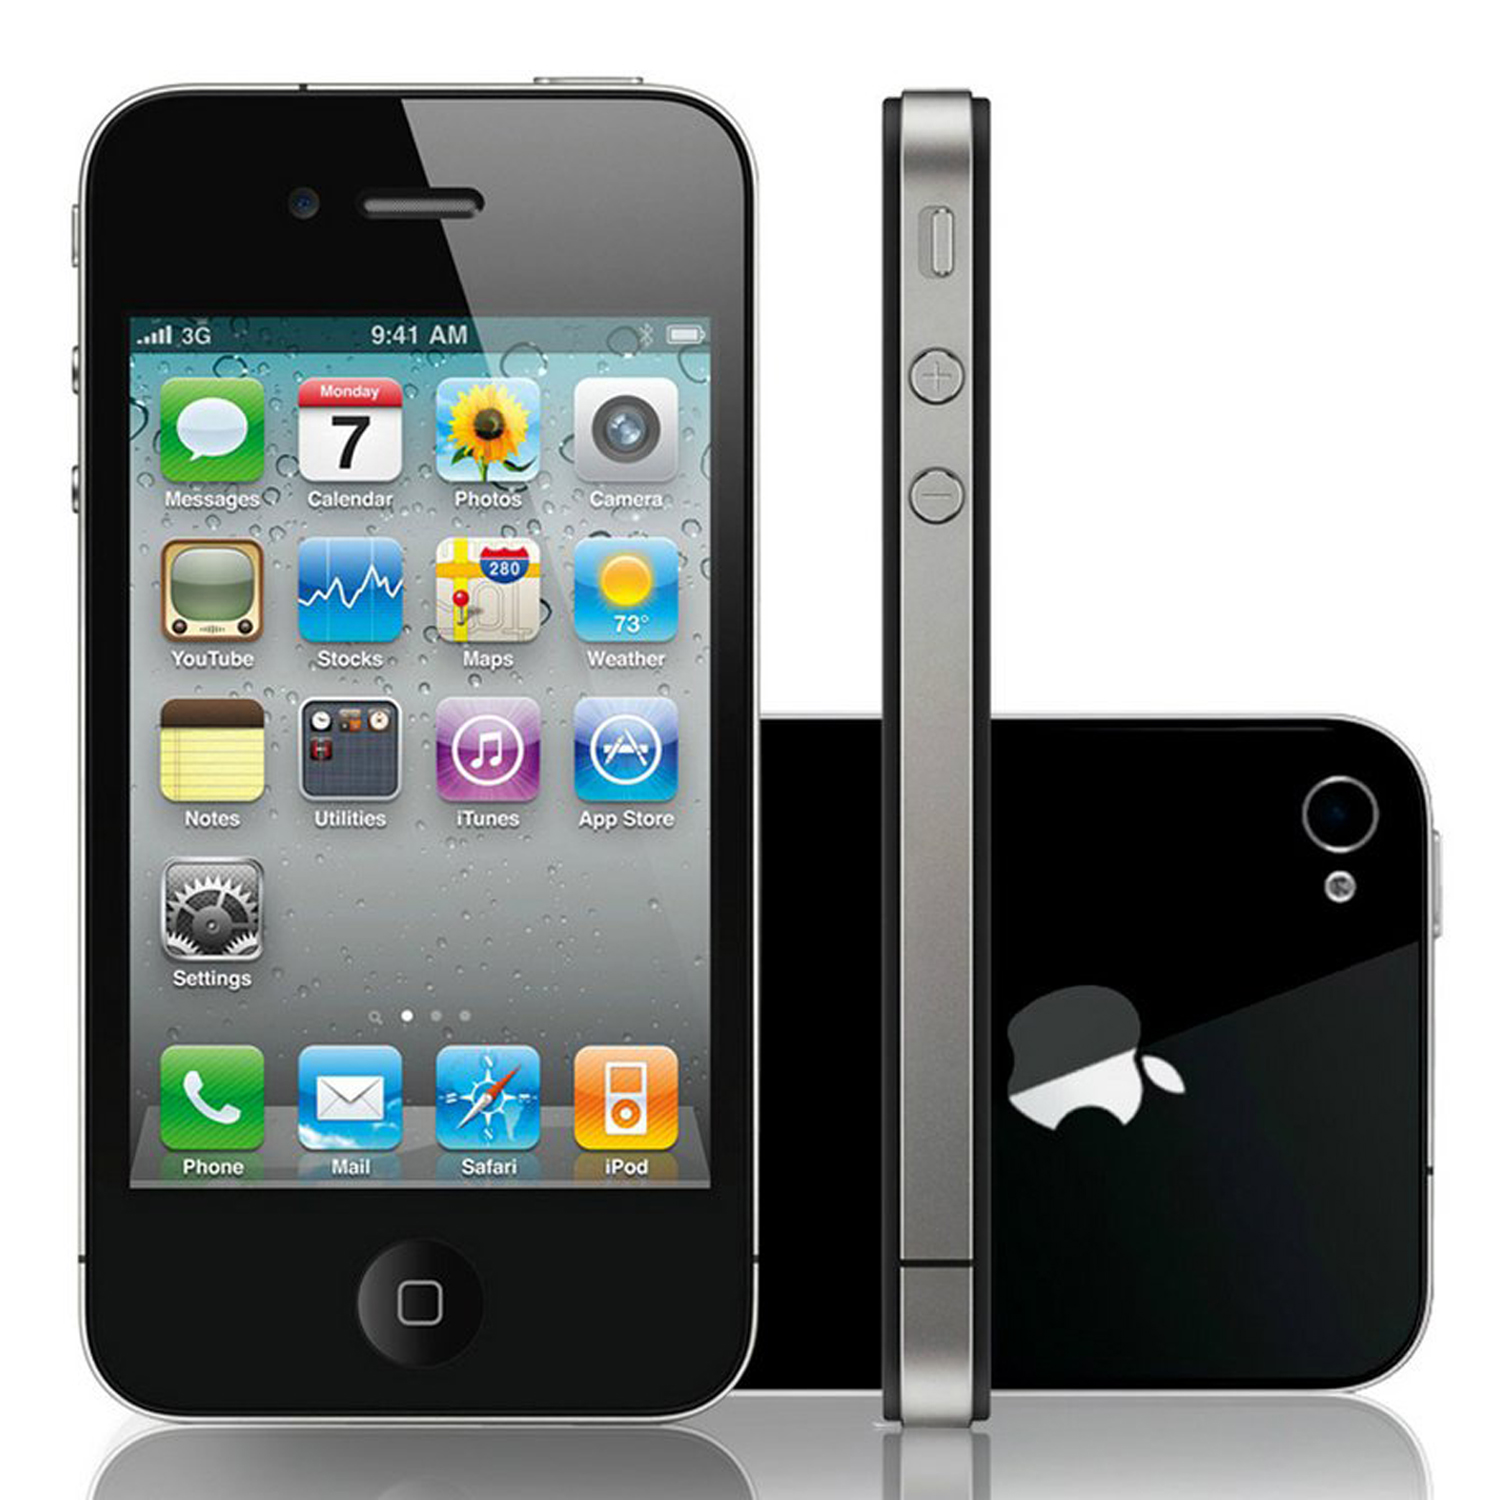 Iphone 16 gb. Apple iphone 4 16gb. Apple iphone 4s 16gb. Apple iphone 4s (16gb) Black. Apple iphone 4s 8gb.